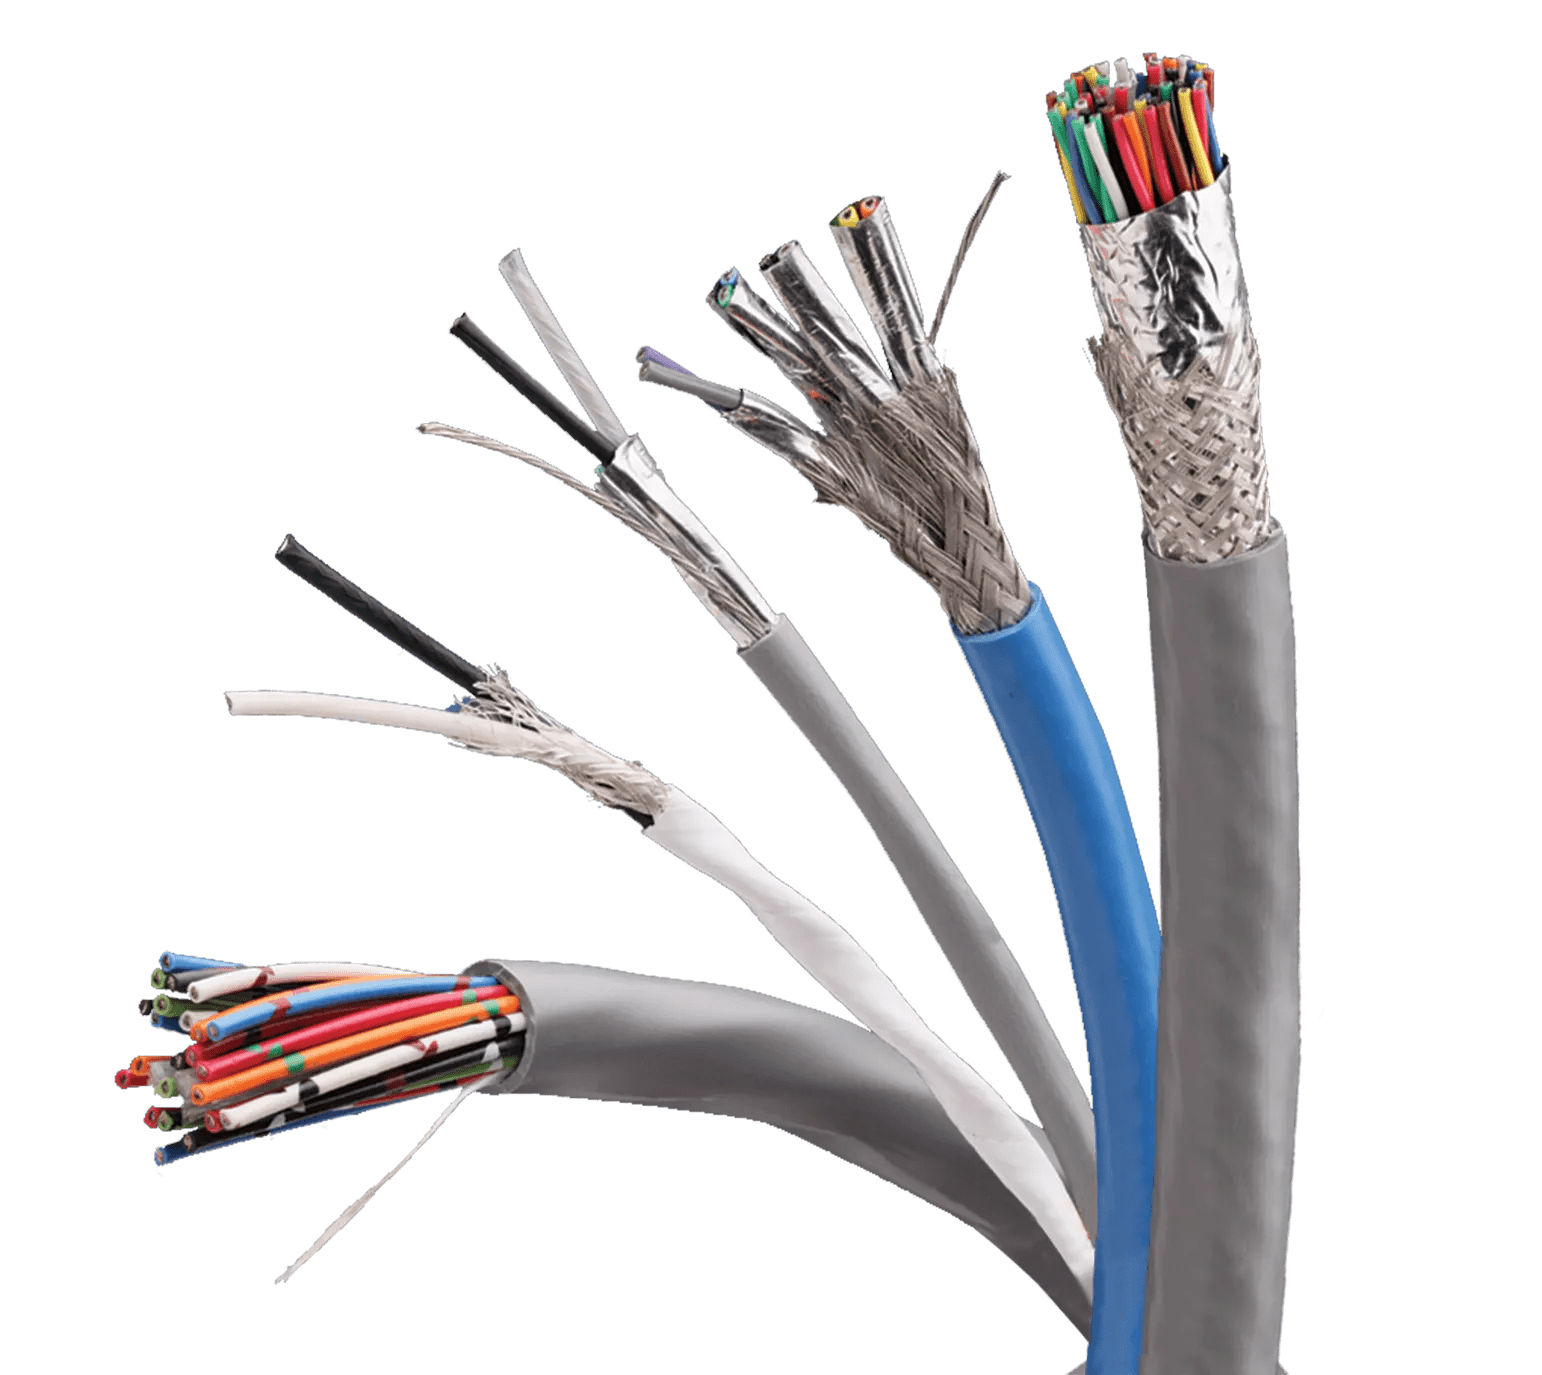 Multi-Conductor Cable